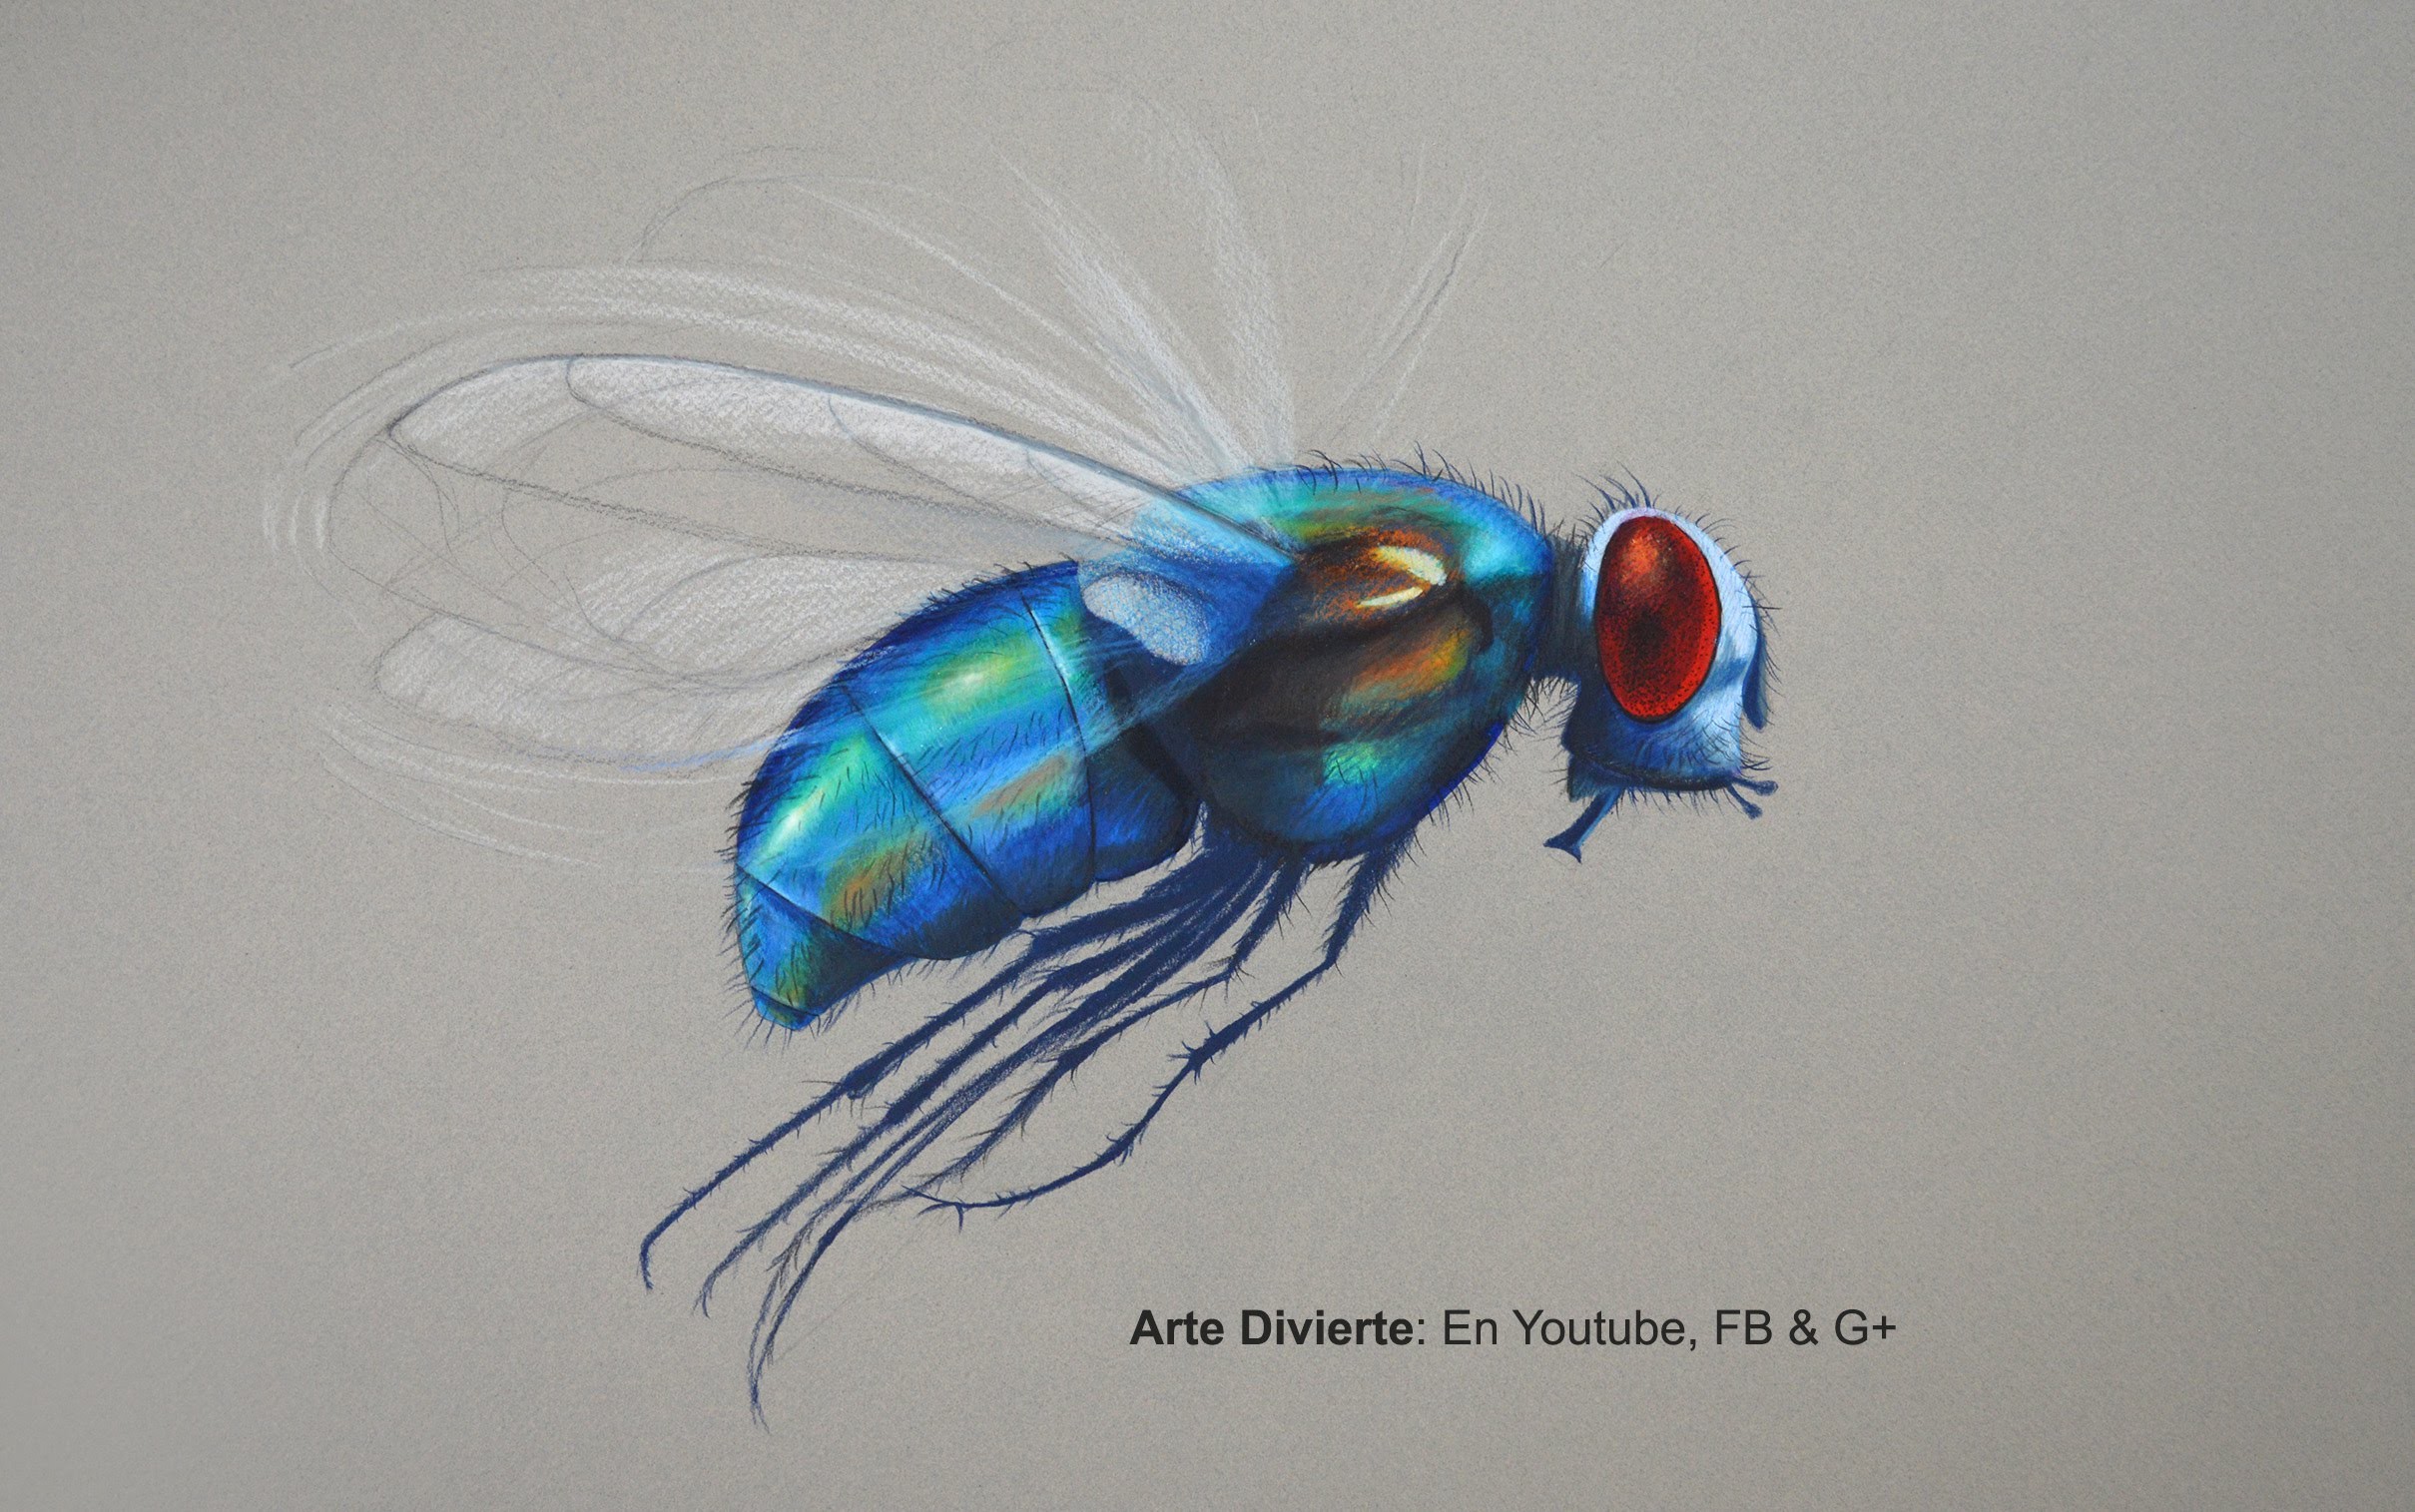 Cómo dibujar una mosca con lápices de colores - Arte Divierte.